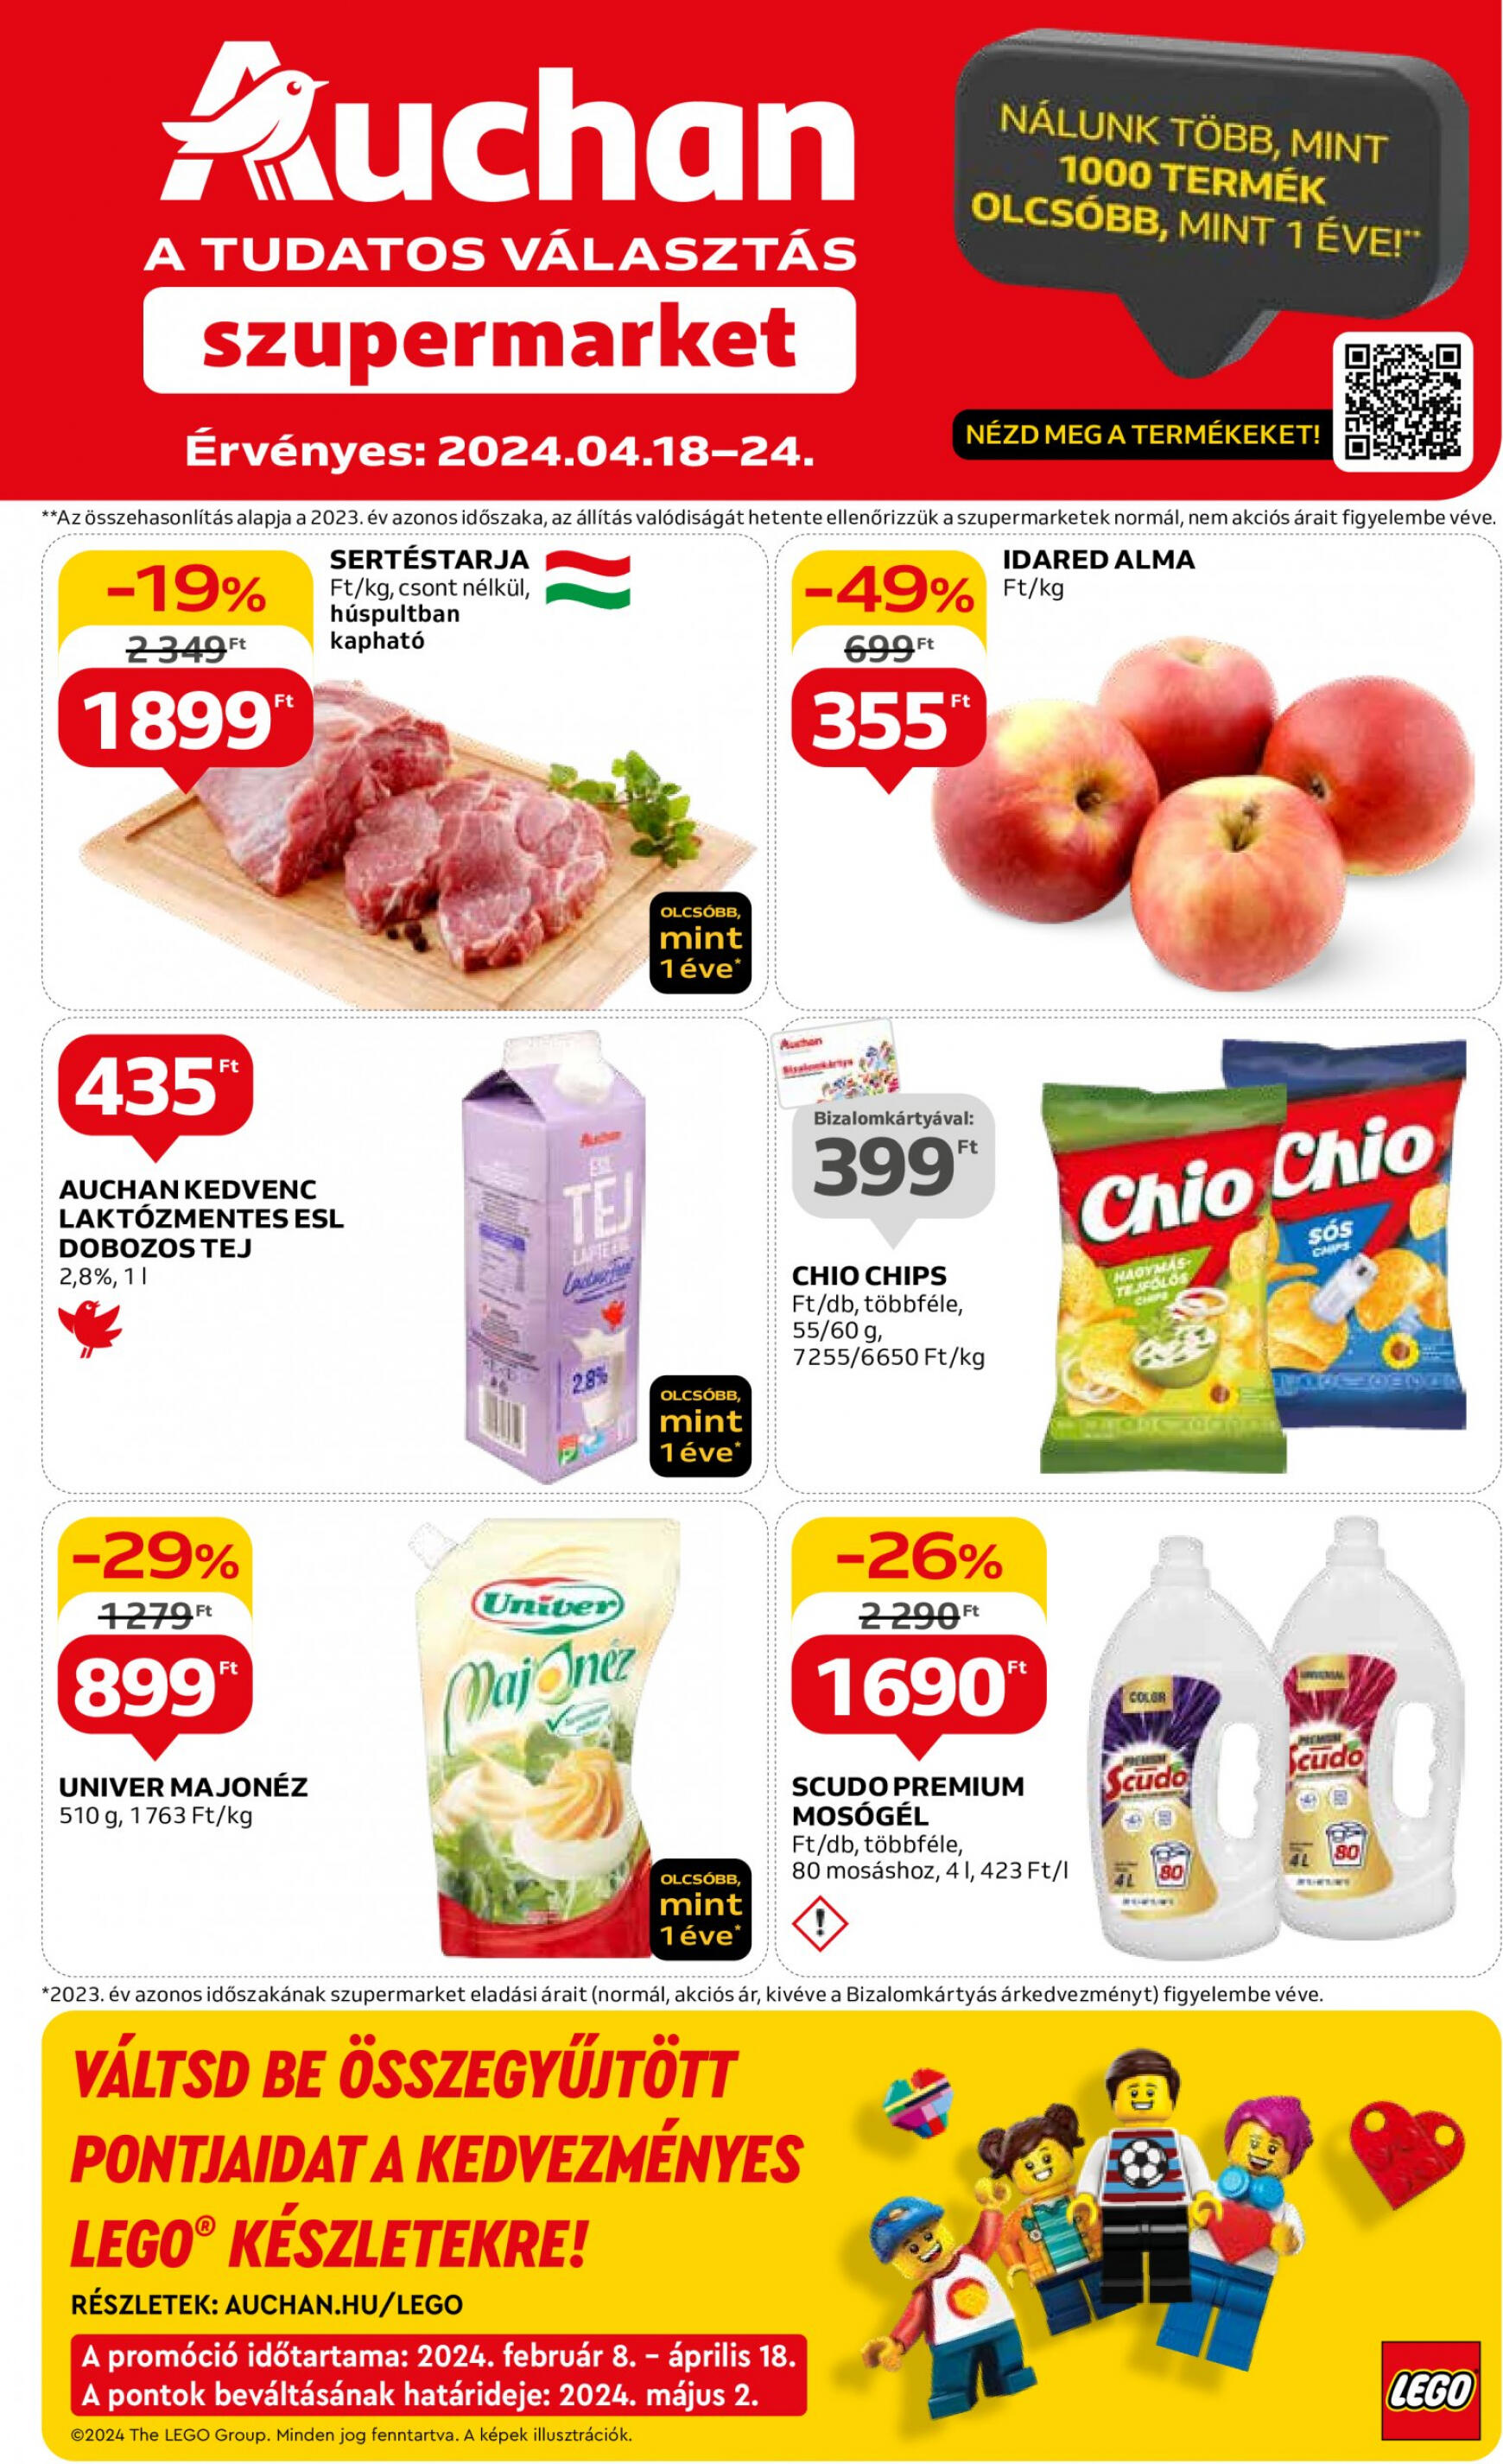 auchan - Aktuális újság Auchan szupermarket 04.18. - 04.24. - page: 1